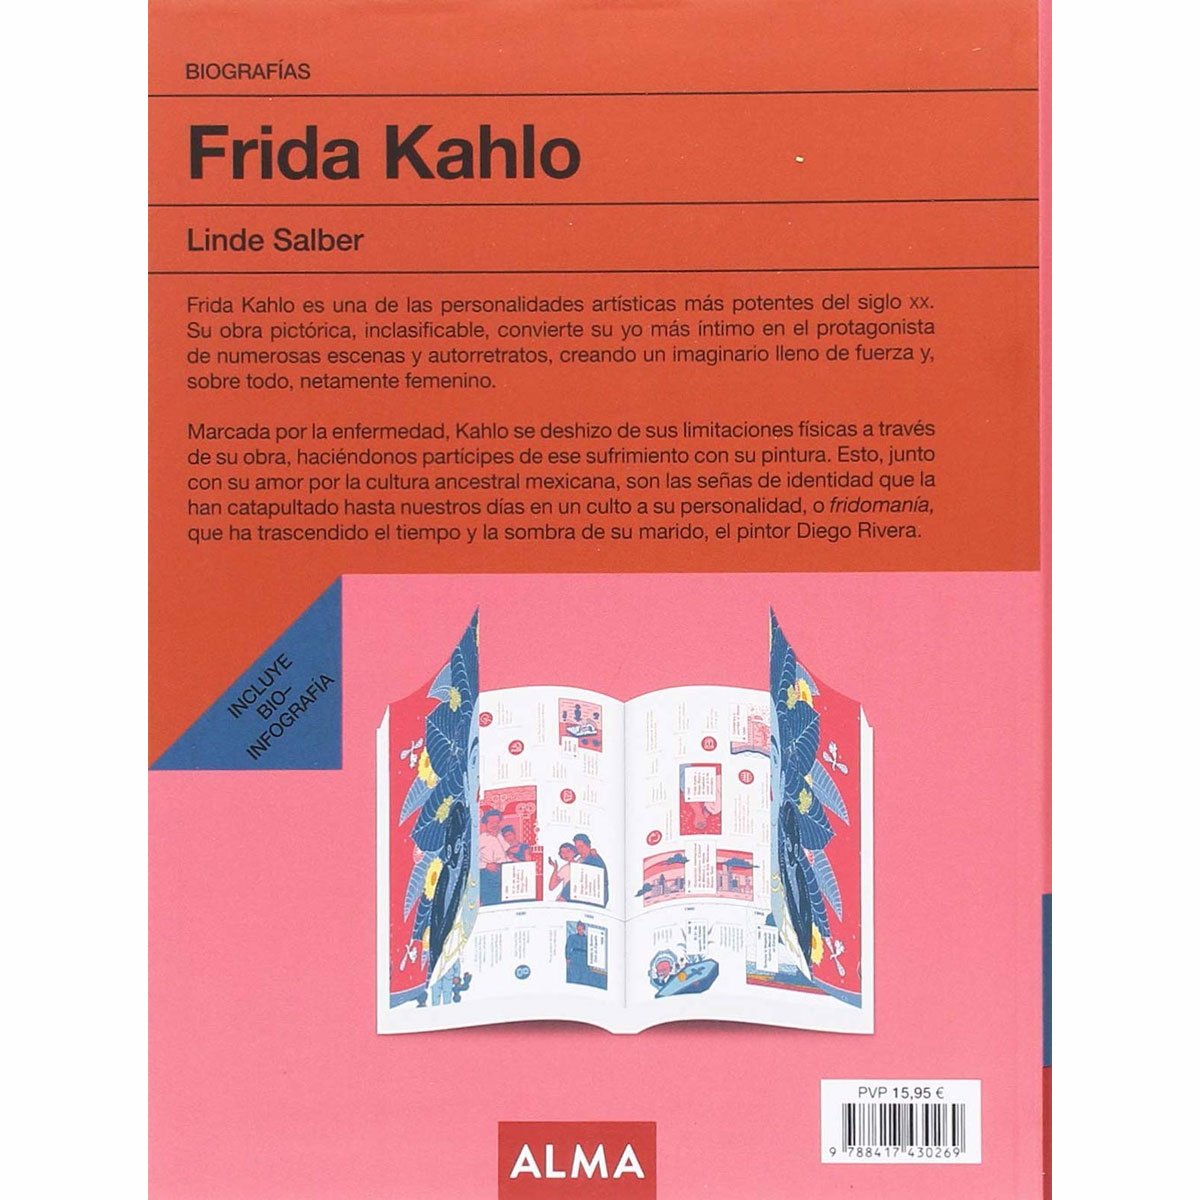 Frida Kahlo Biografía Alma